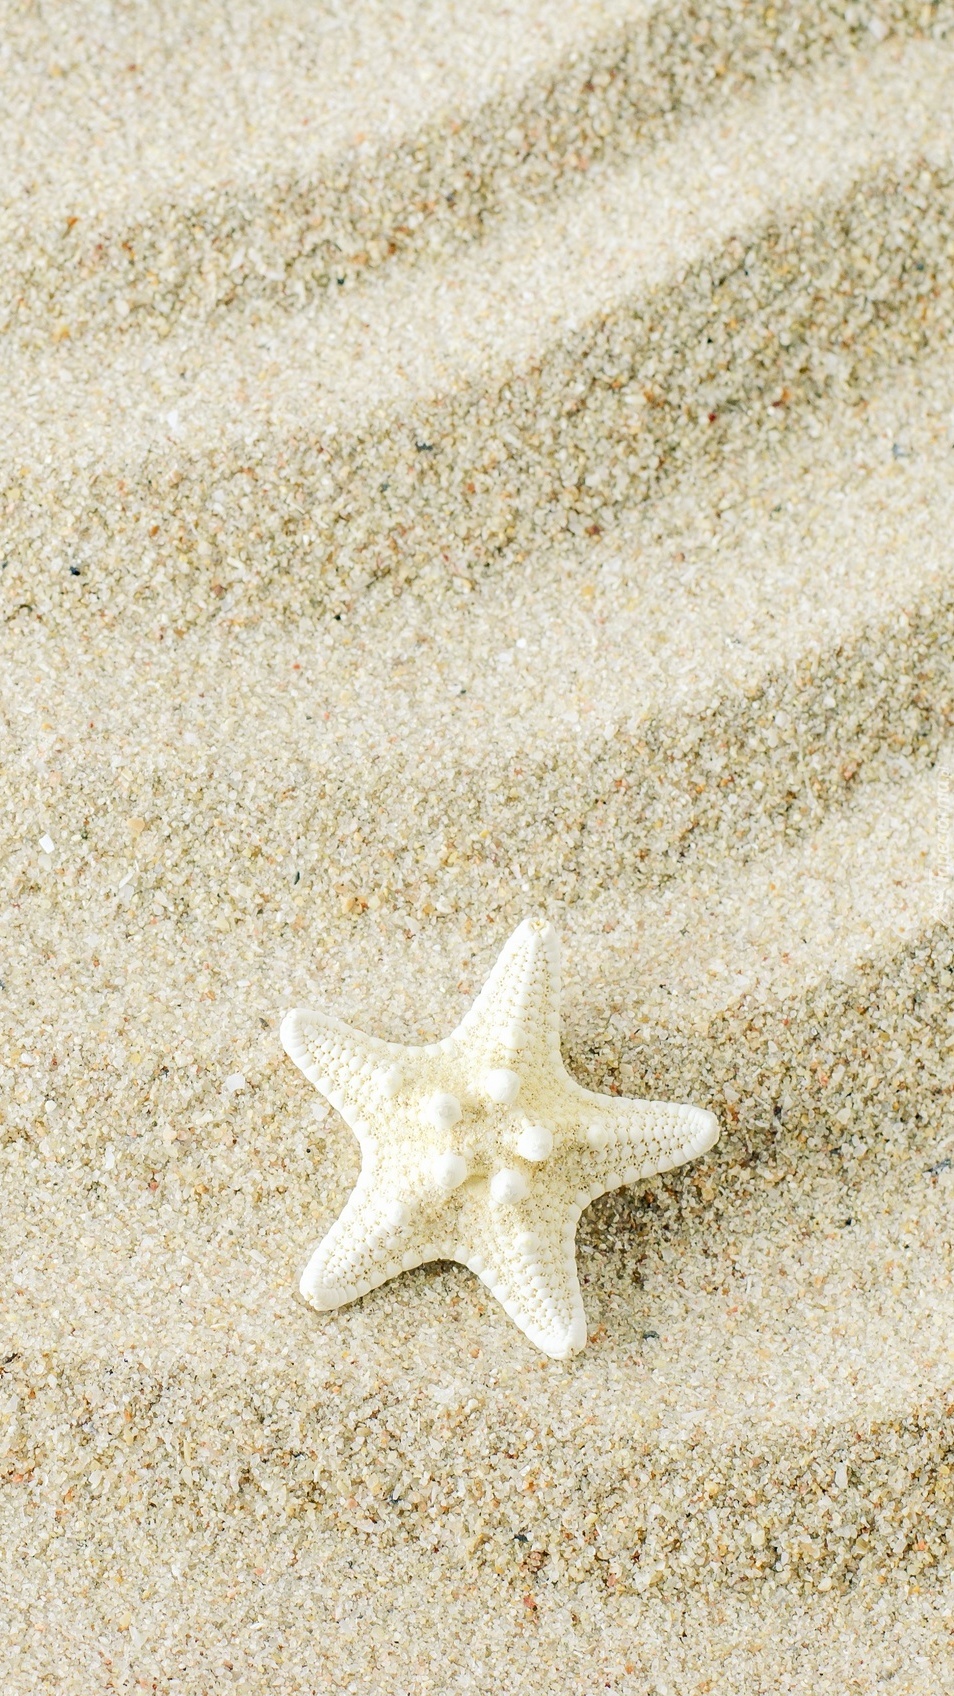 Rozgwiazda na piasku